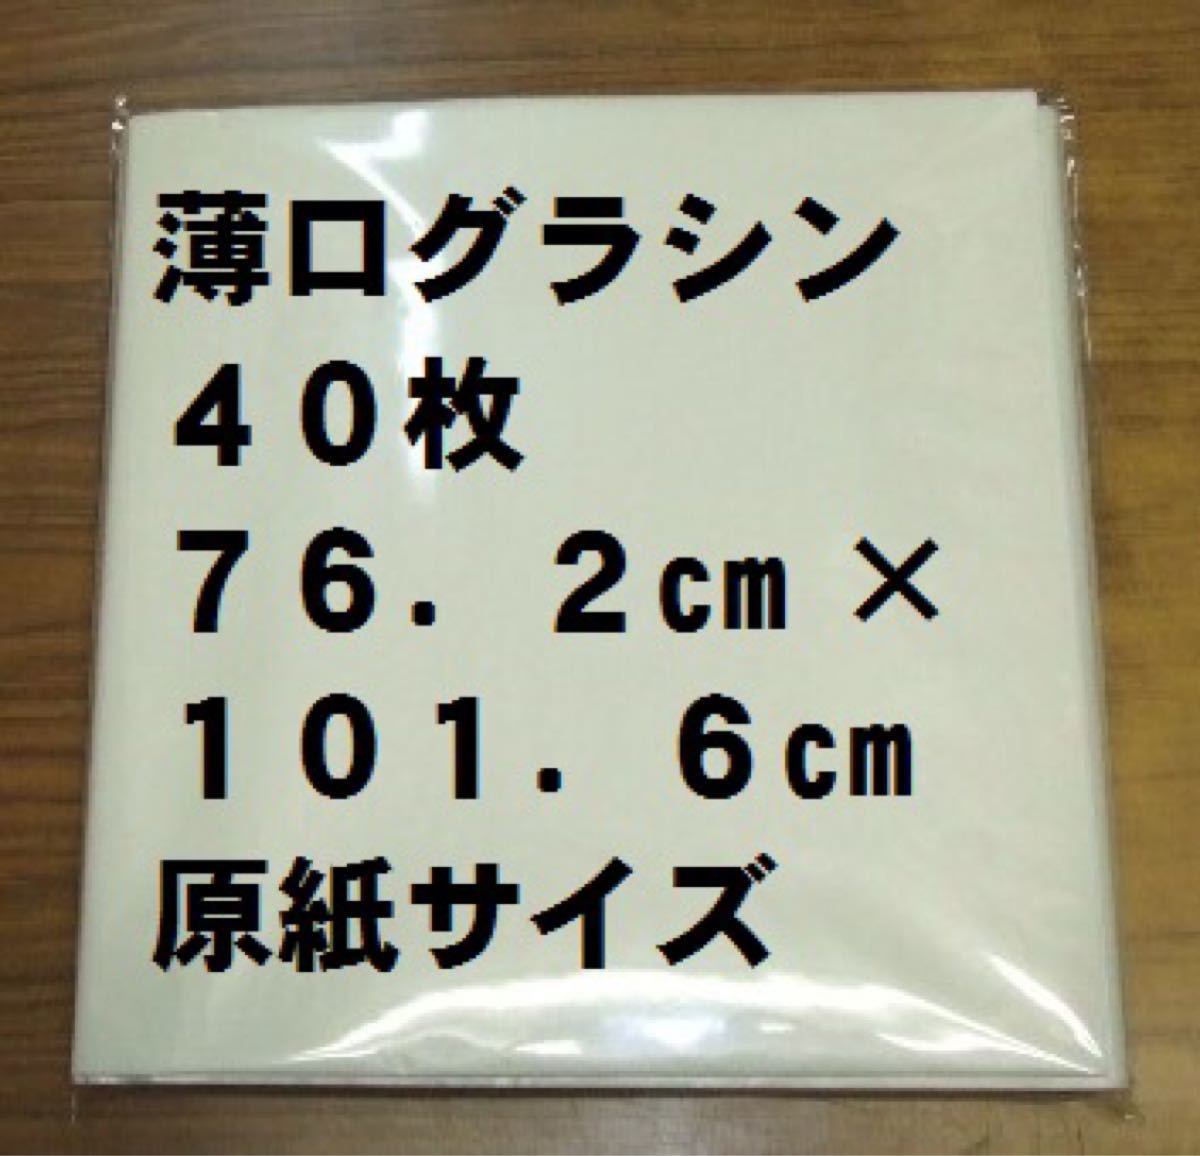 薄口グラシン紙 40枚 762mm×1016mm 全判 ブックカバー等に半透明紙